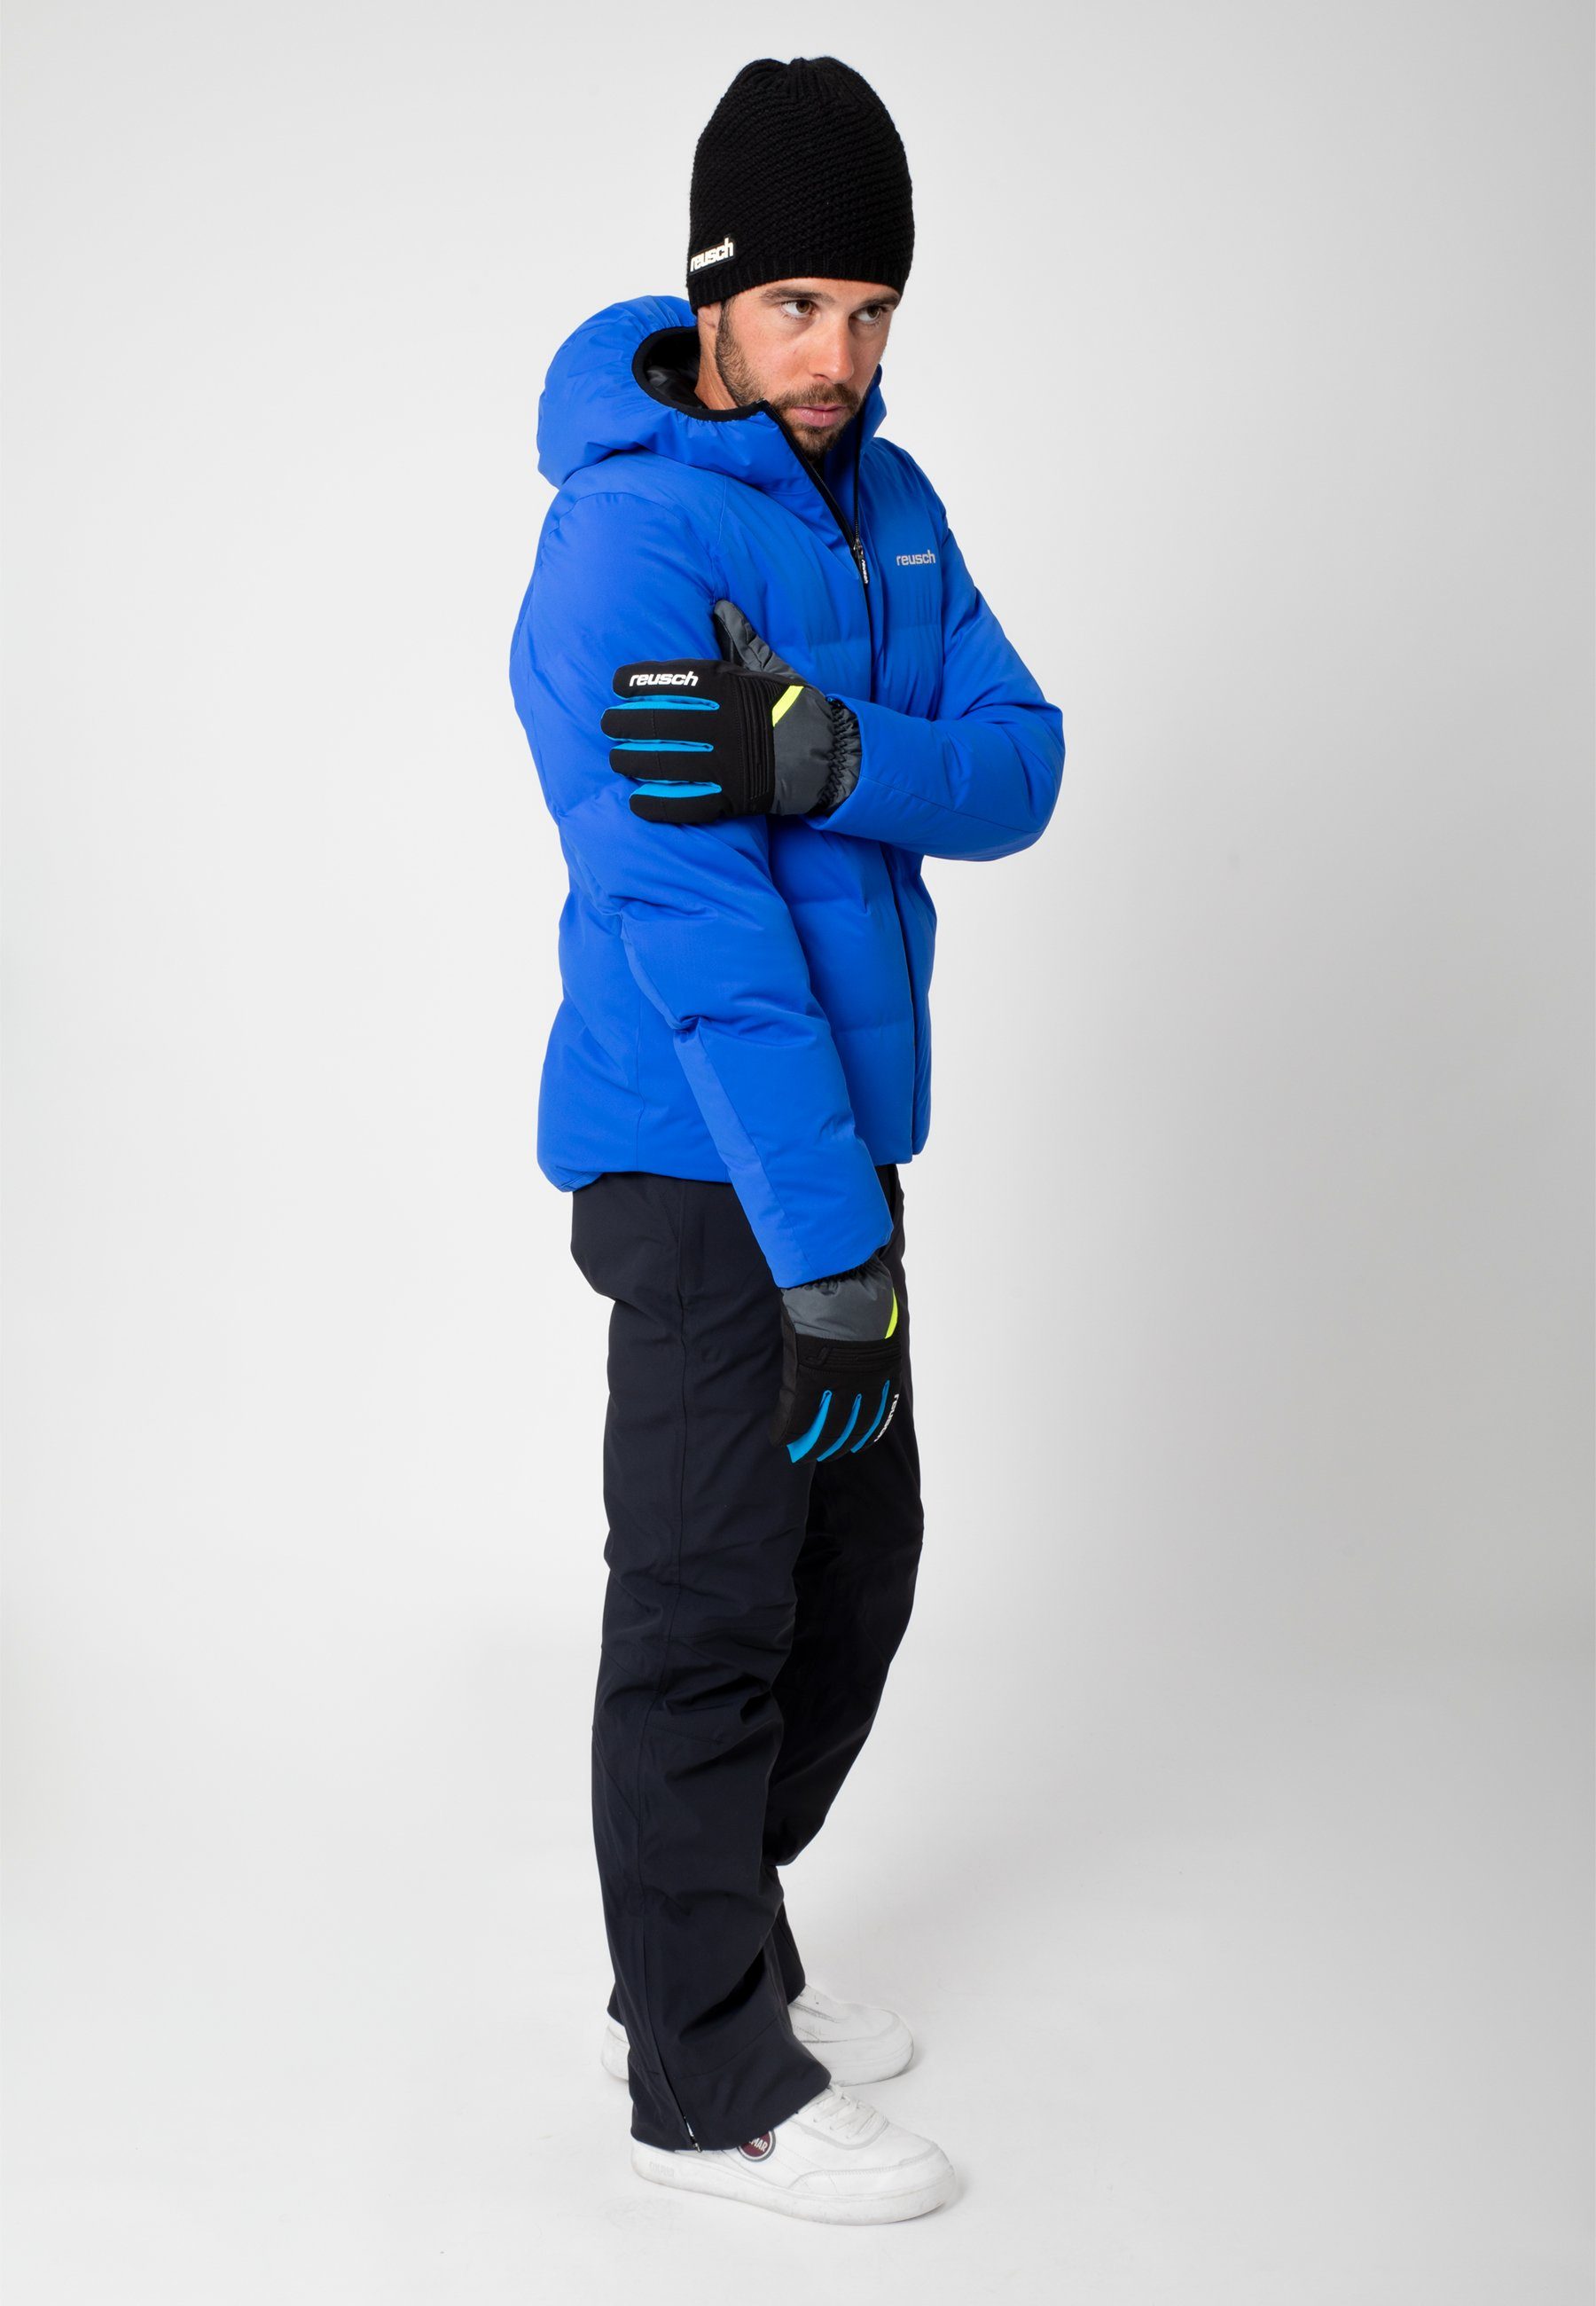 Reusch Skihandschuhe Baldo R-TEX XT grau-gelb warm und wasserdicht